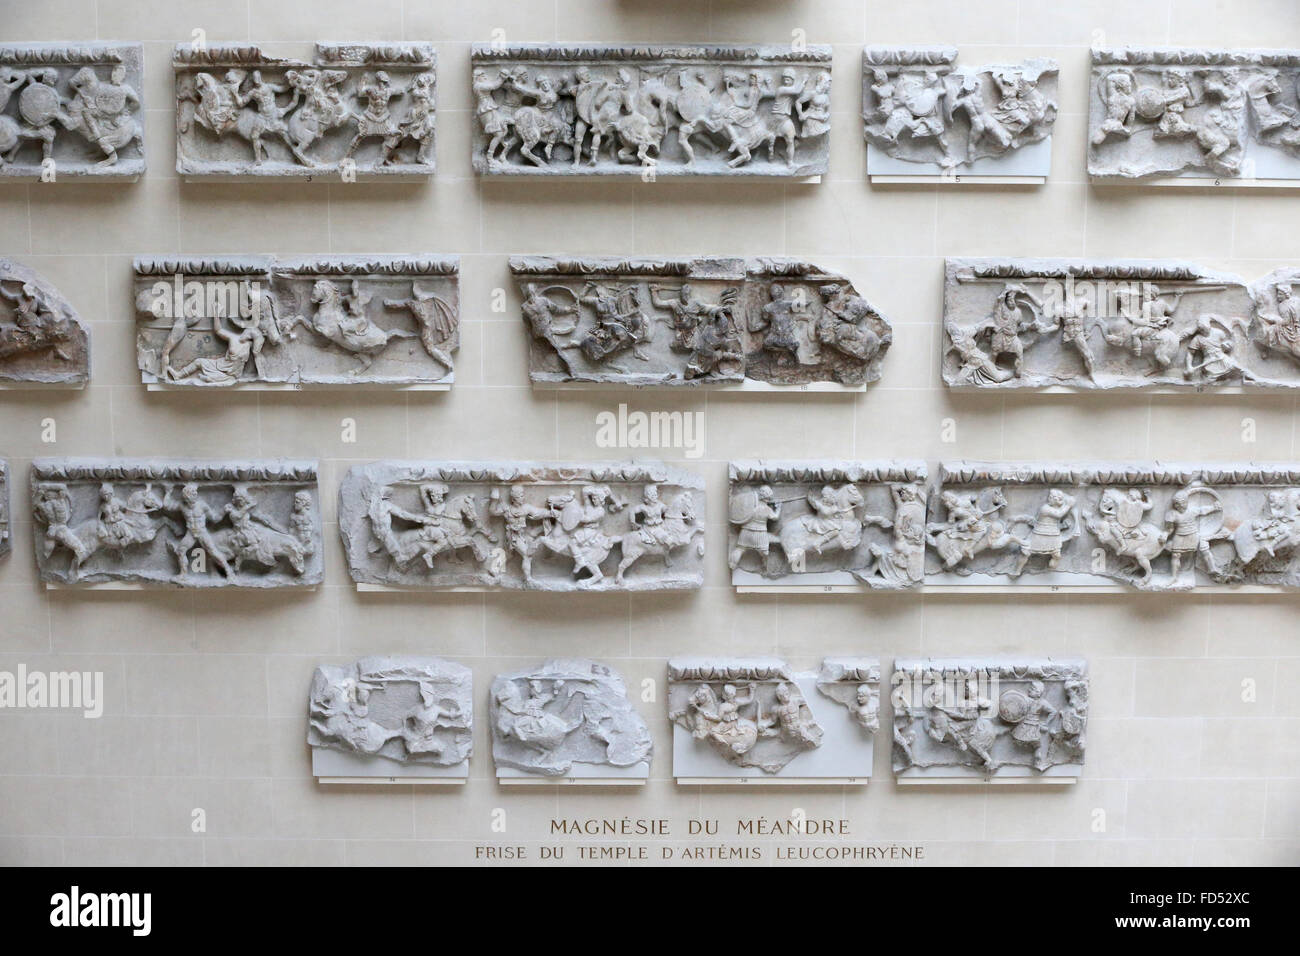 Le Musée du Louvre. La magnésie sur le méandre. Temple d'Artemis. Banque D'Images